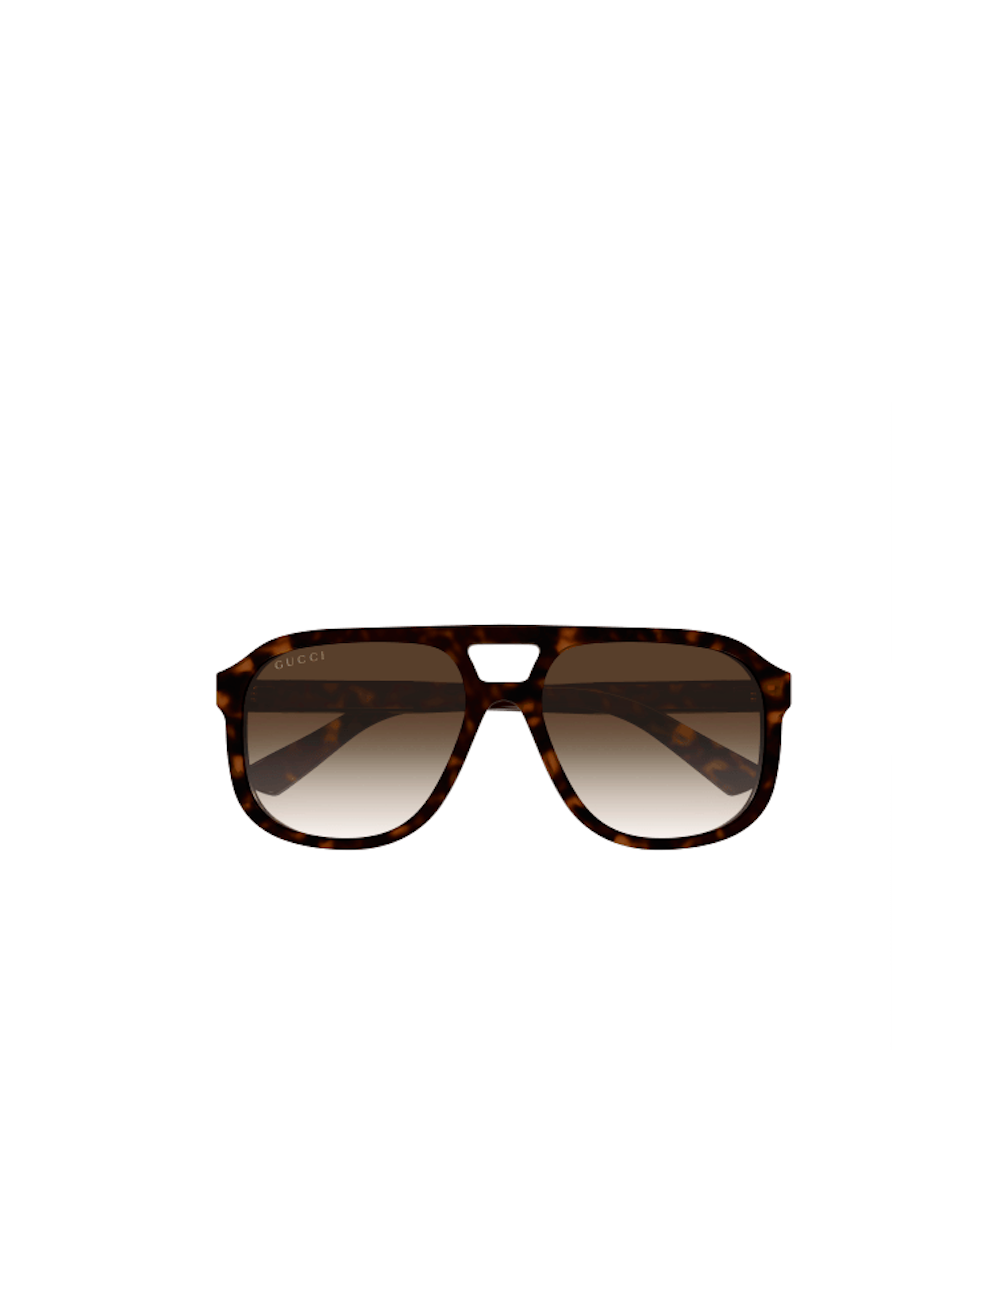 Gucci GG1188S Aviator Sunglasses